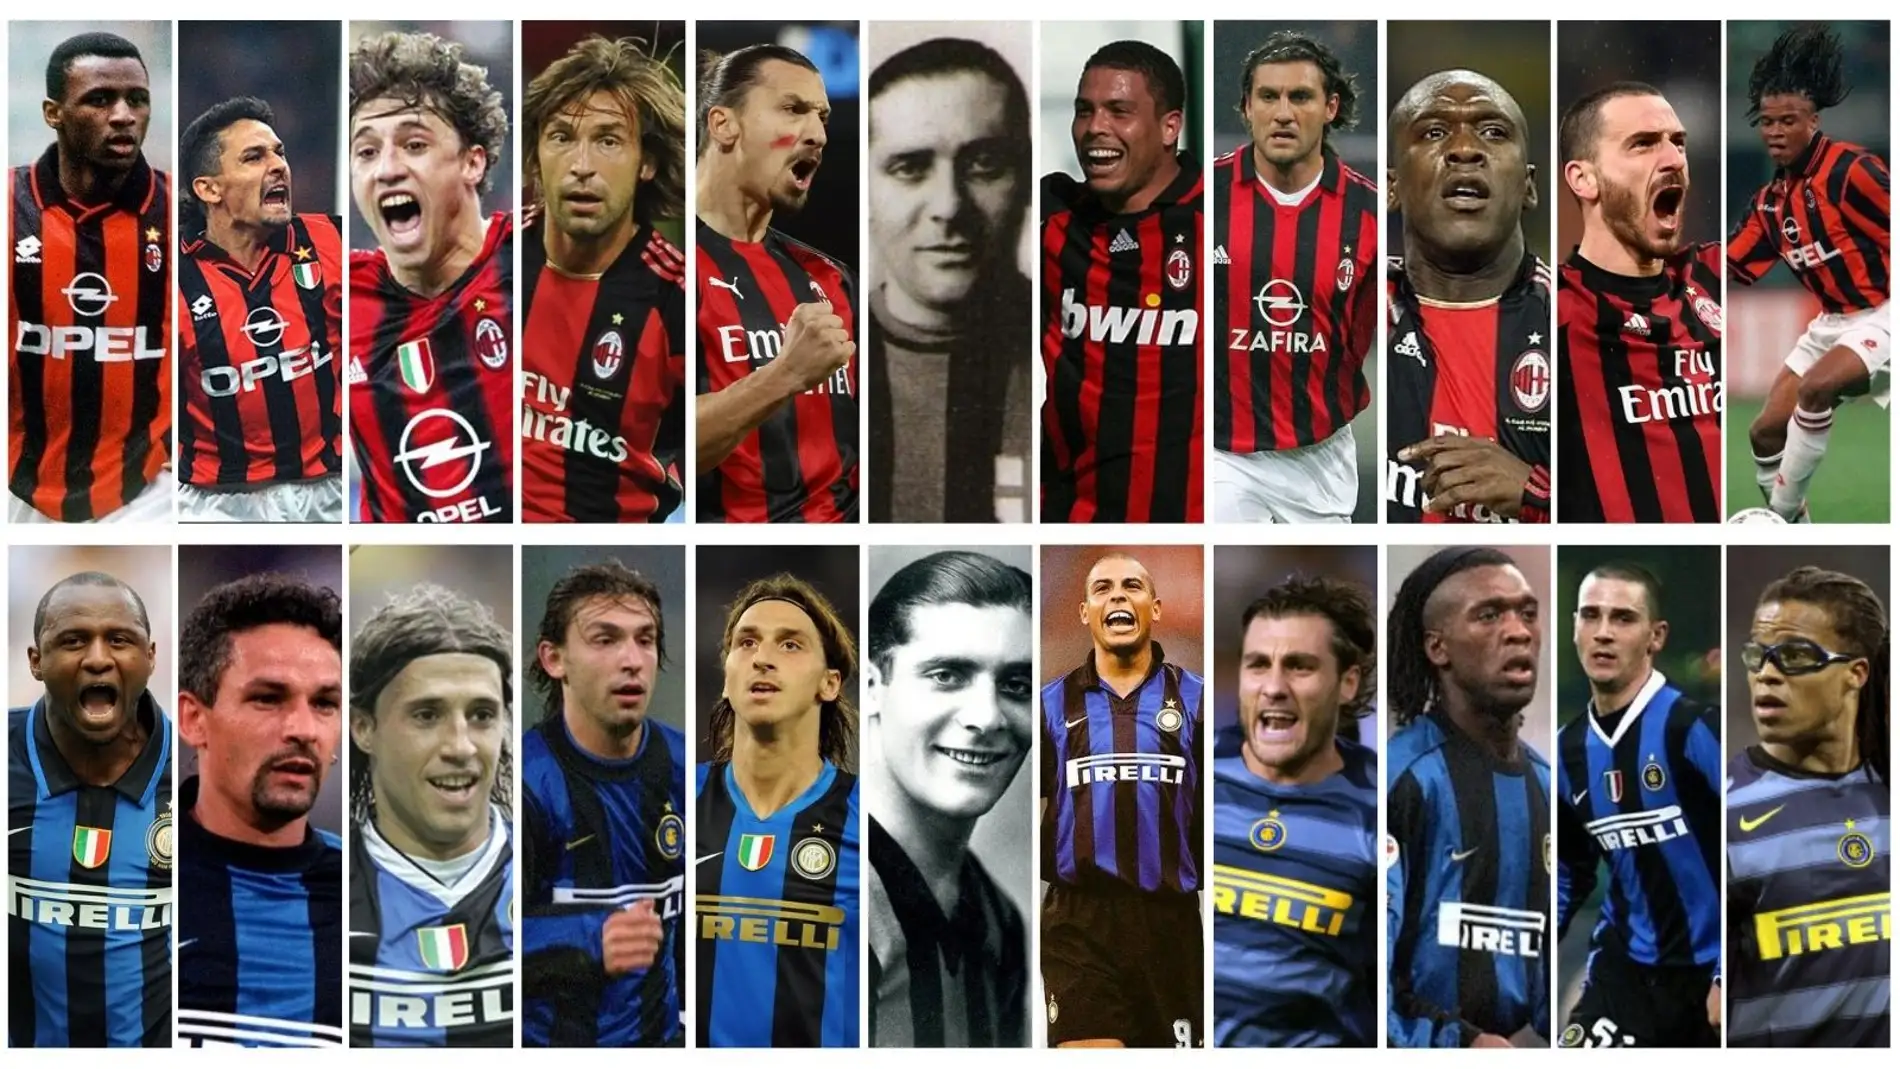 ¿Cómo se llaman los delanteros del Milán